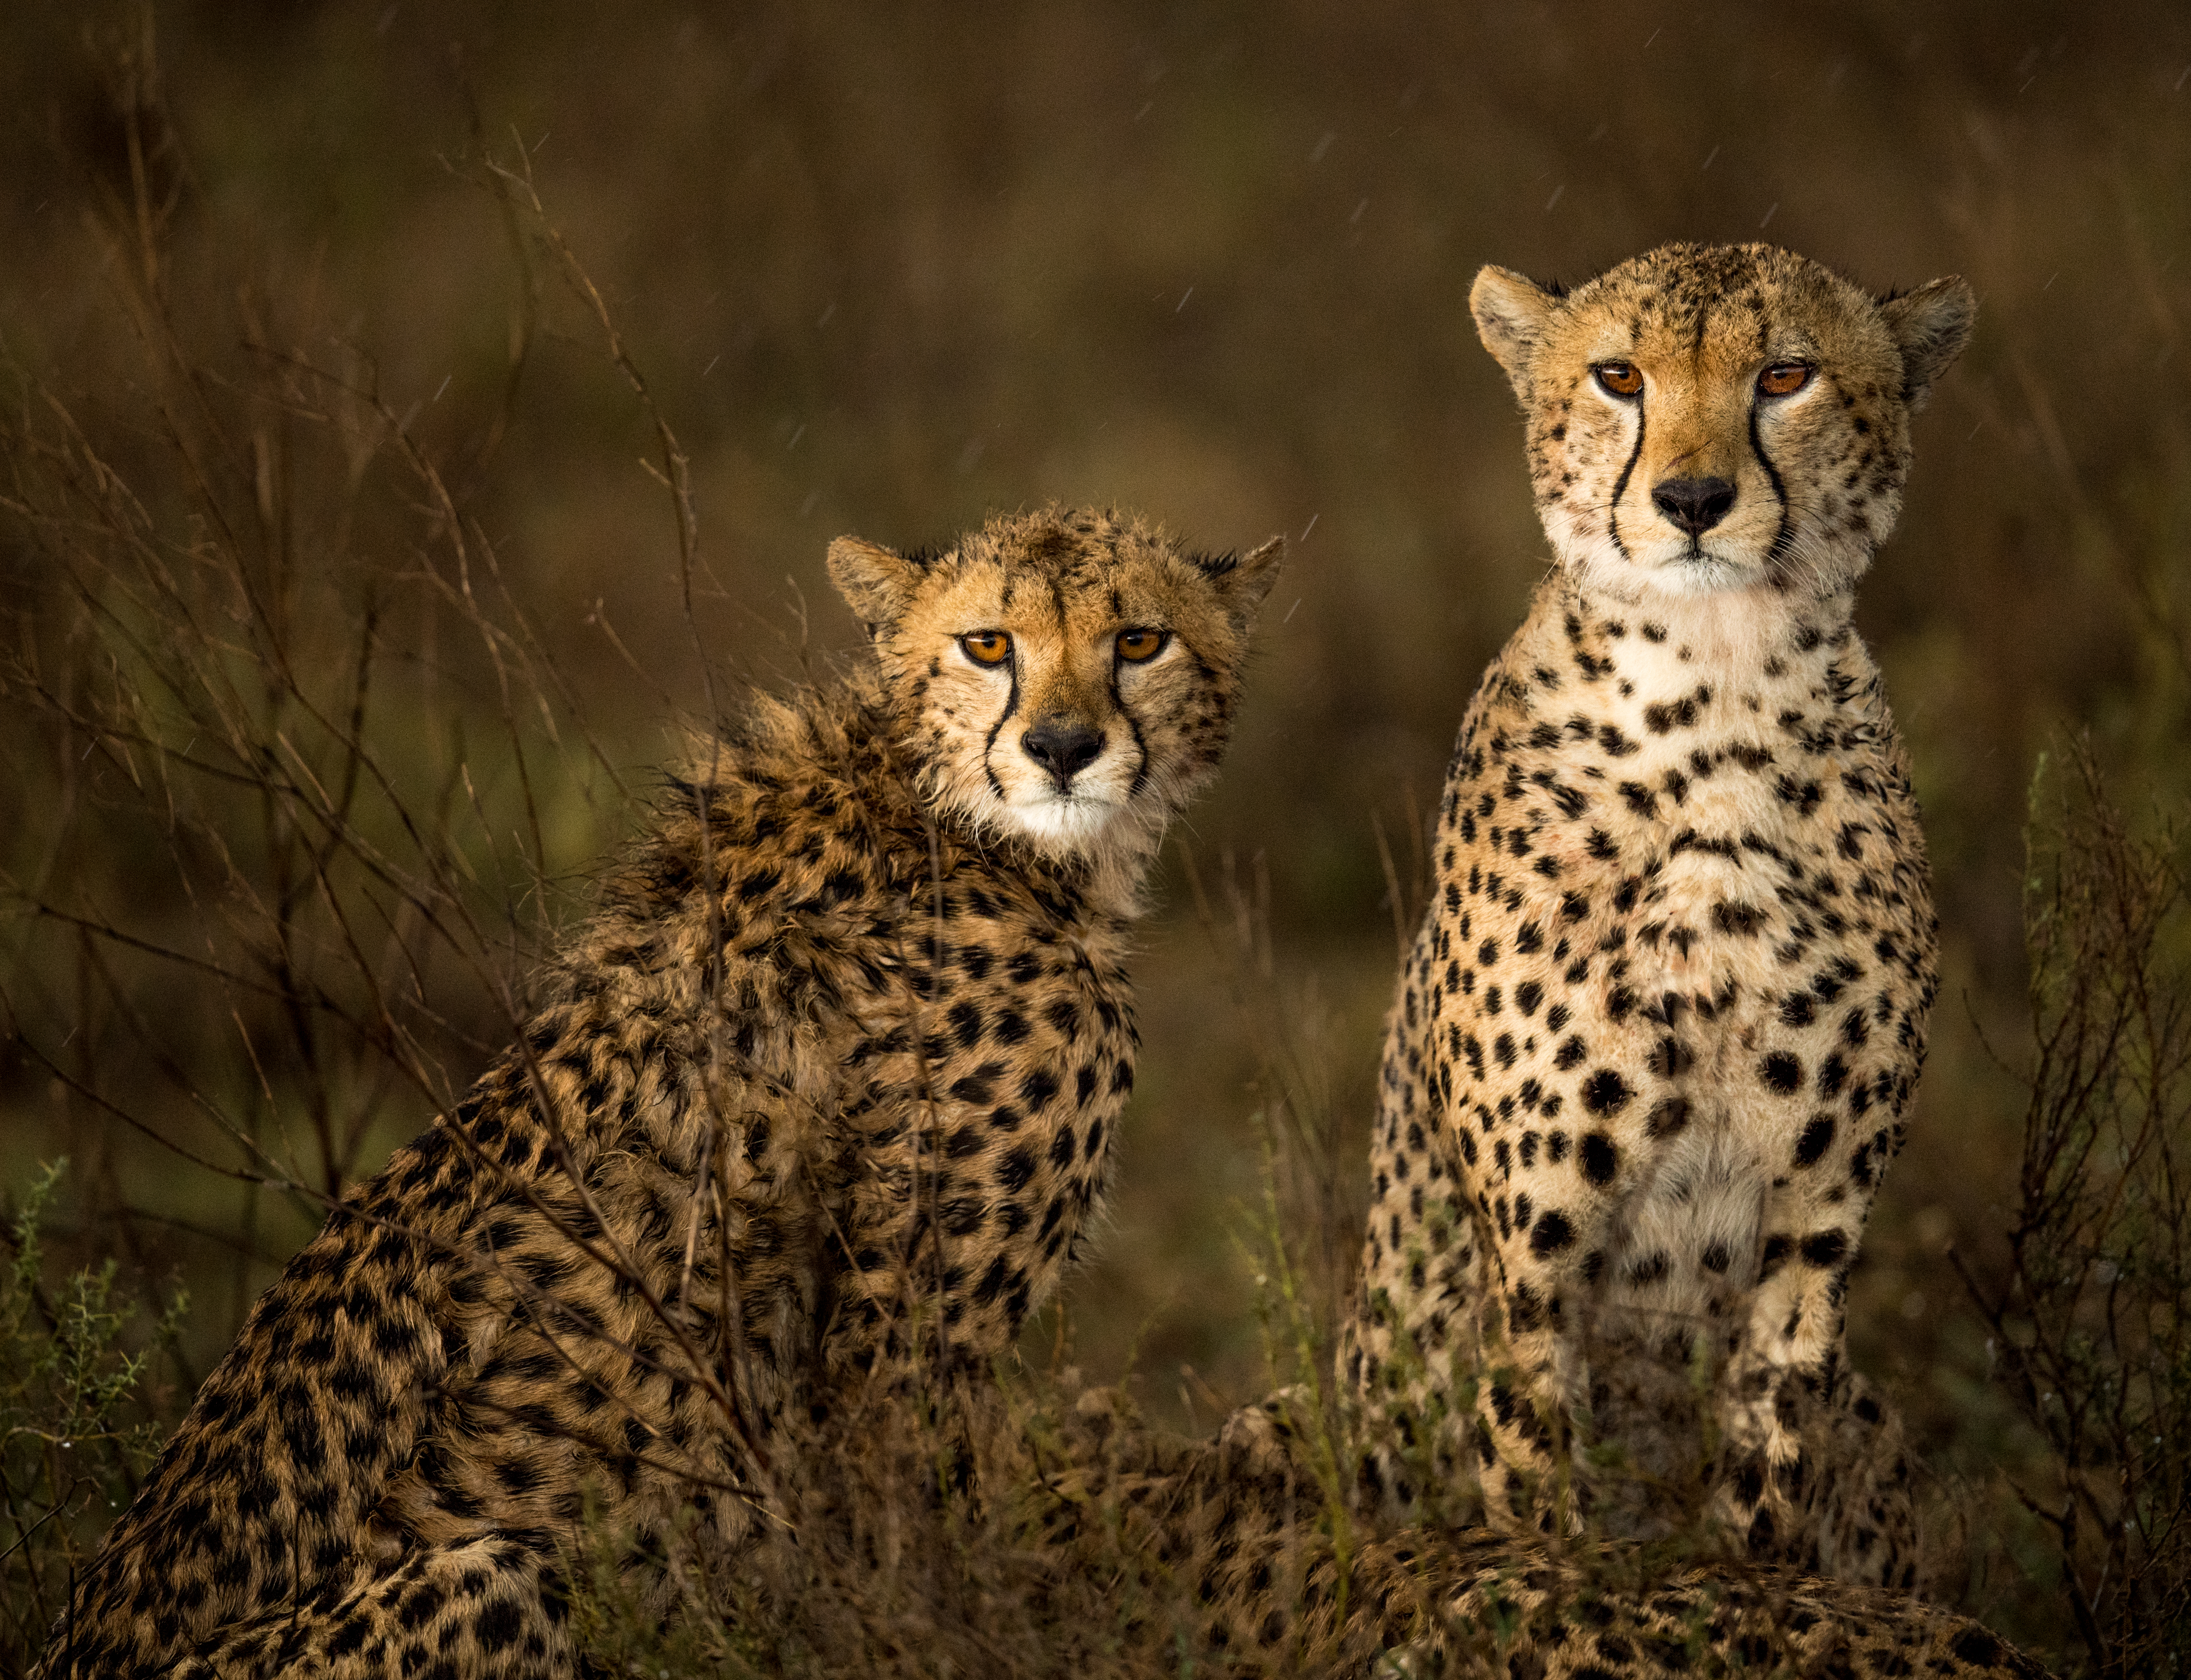 Two cheetahs in the rain